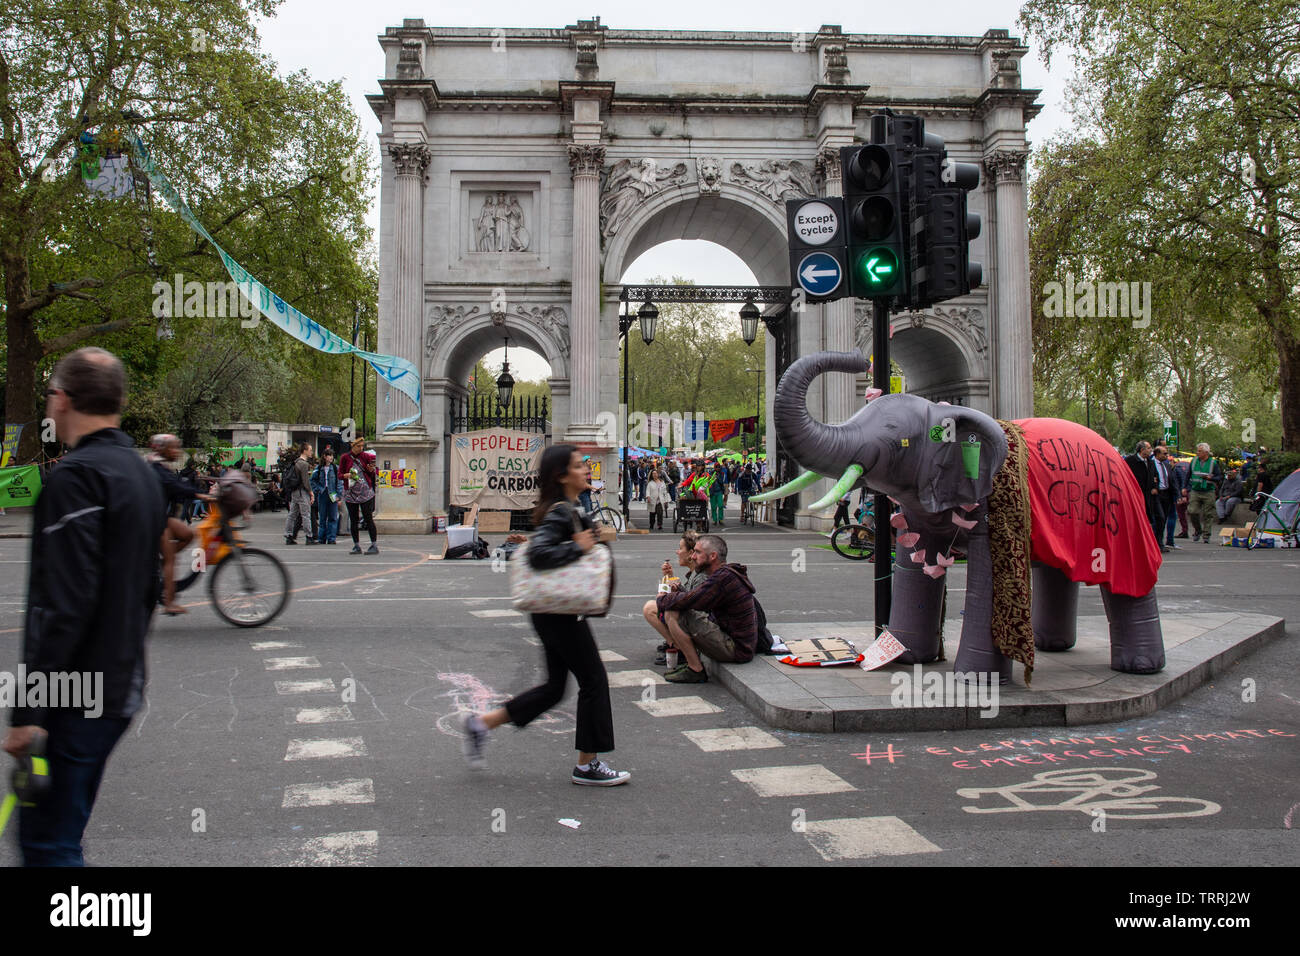 London, England, Regno Unito - 23 Aprile 2019: i ciclisti e i pedoni viaggiano attraverso un accampamento di protesta dalla ribellione di estinzione a Marble Arch, in centro a Londra. Foto Stock